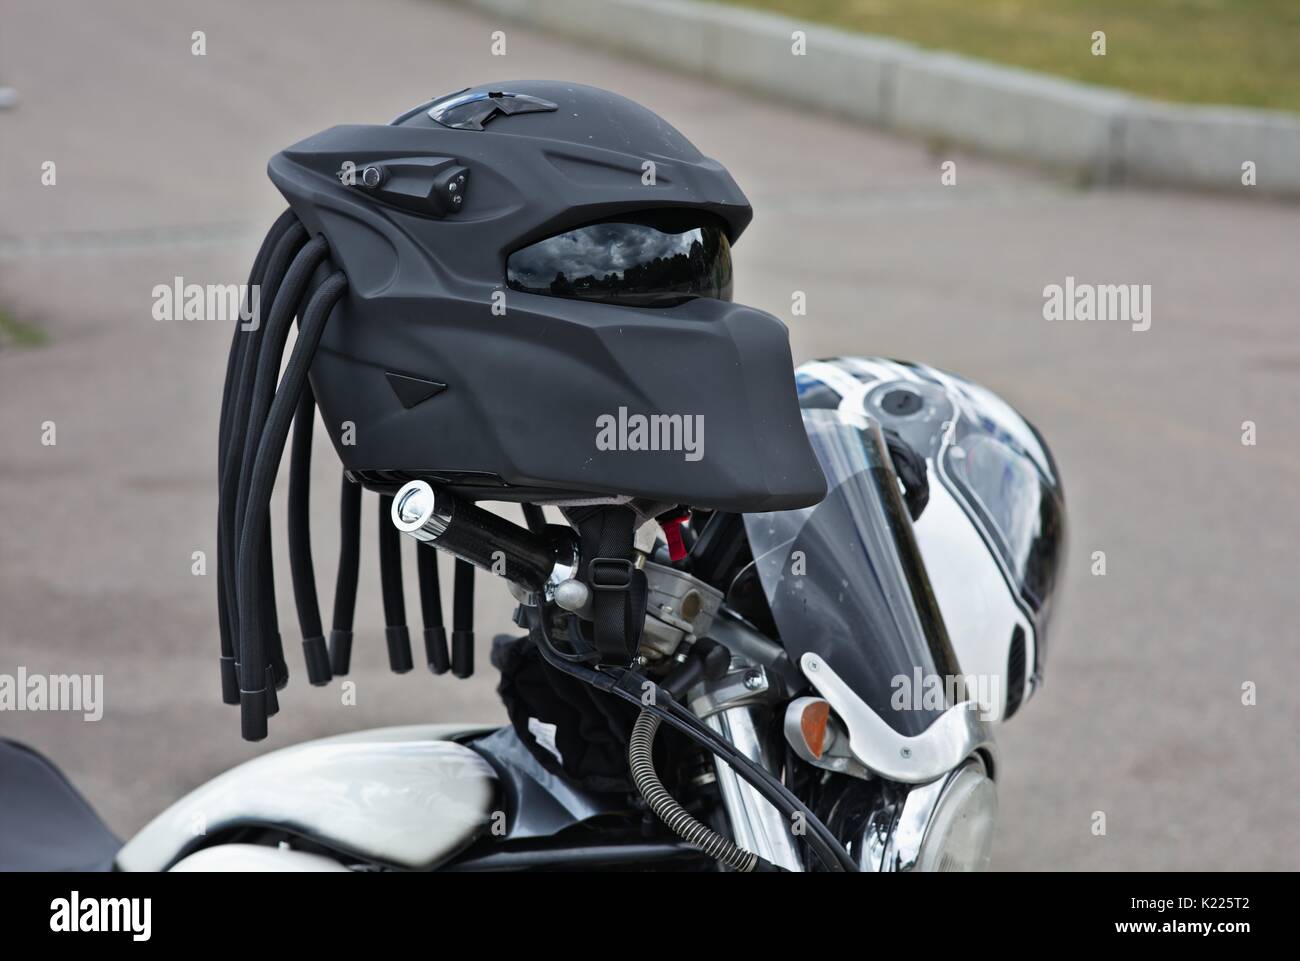 Casque de moto futuriste noir Photo Stock - Alamy